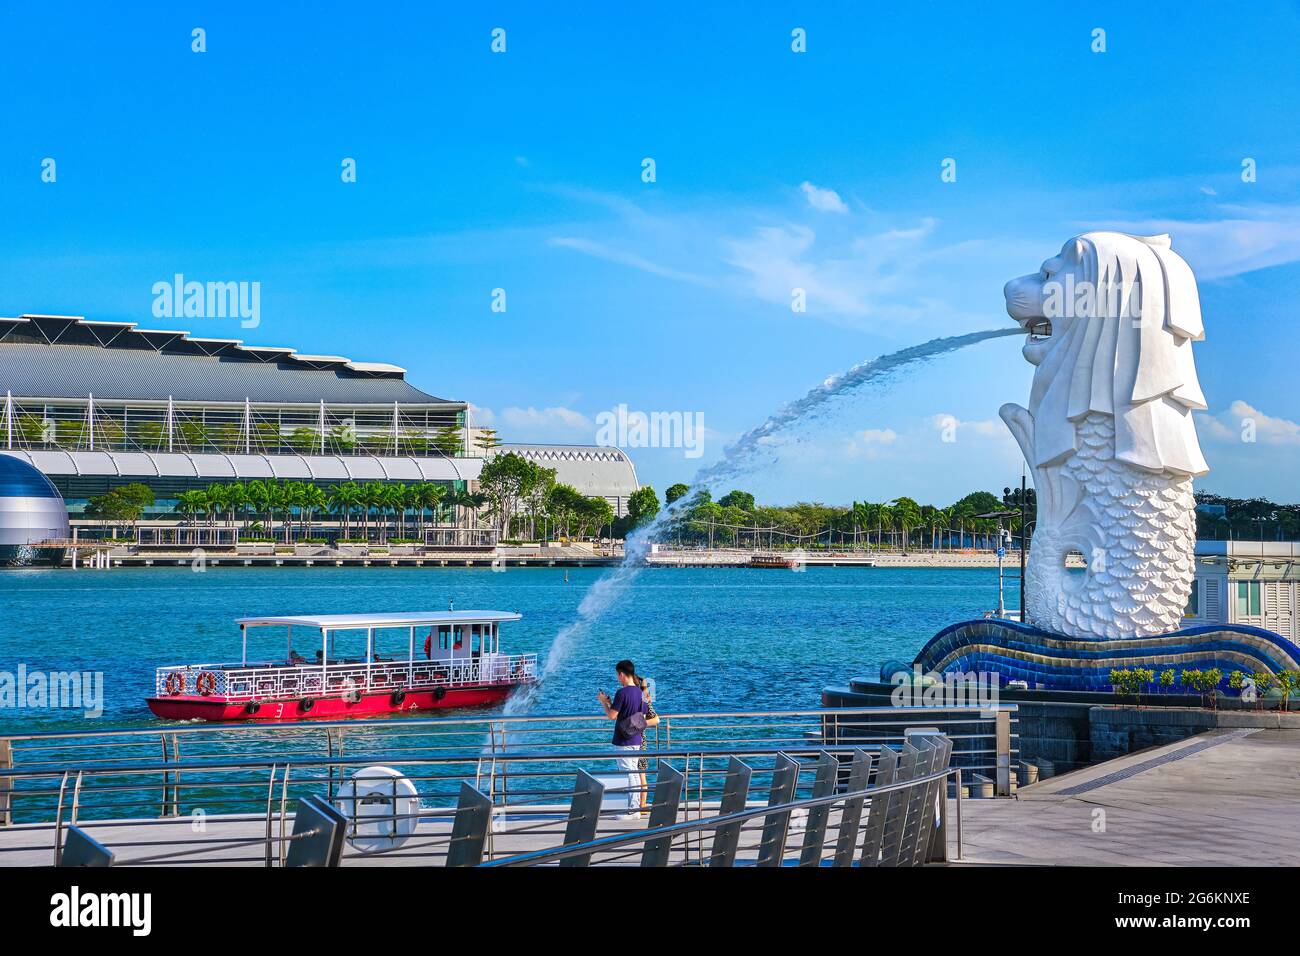 Le bateau touristique passe par Merlion, symbole de Singapour, sur la rive de la baie de Marina. Quelques adultes méconnaissables prennent des photos ou font des selfies avec une vue Banque D'Images